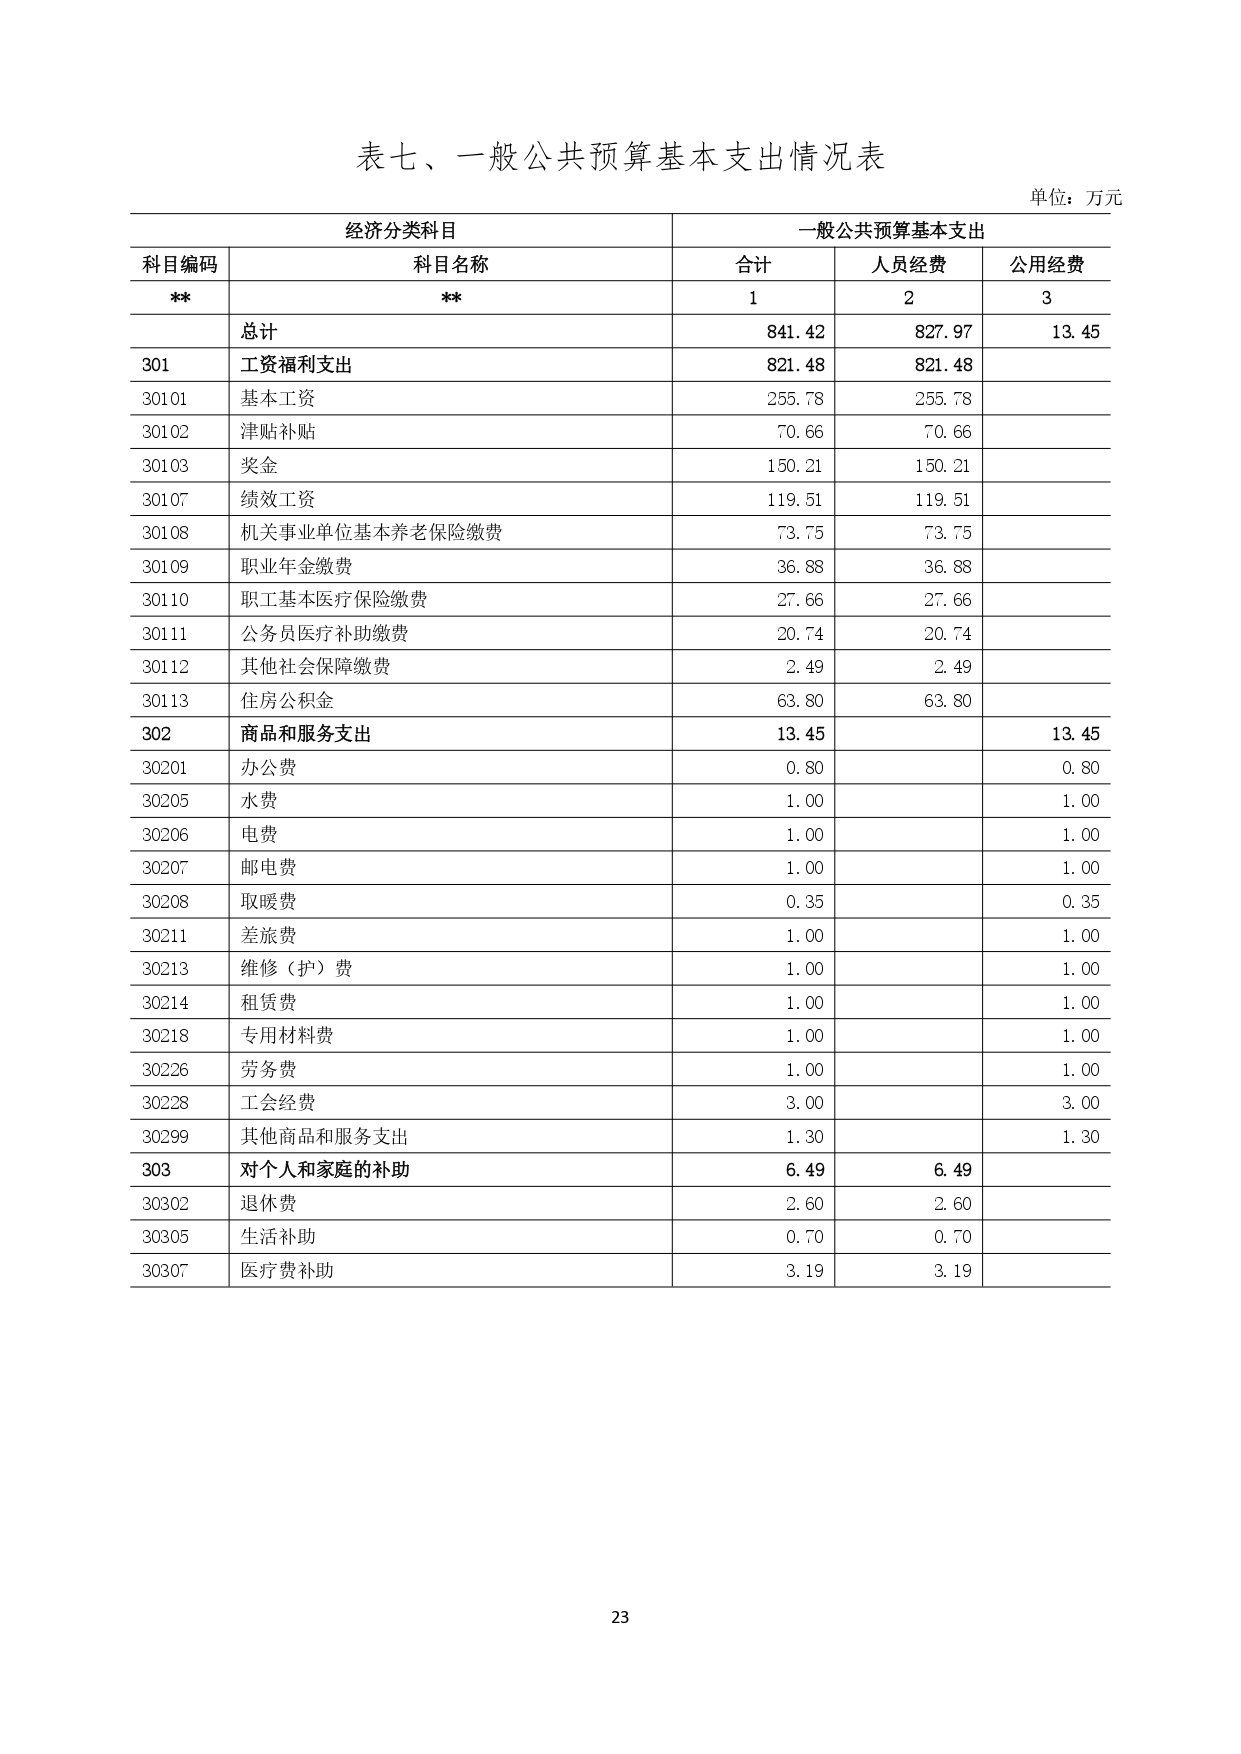 甘肃省广播电视学校2023年单位预算公开报告_page-0024.jpg